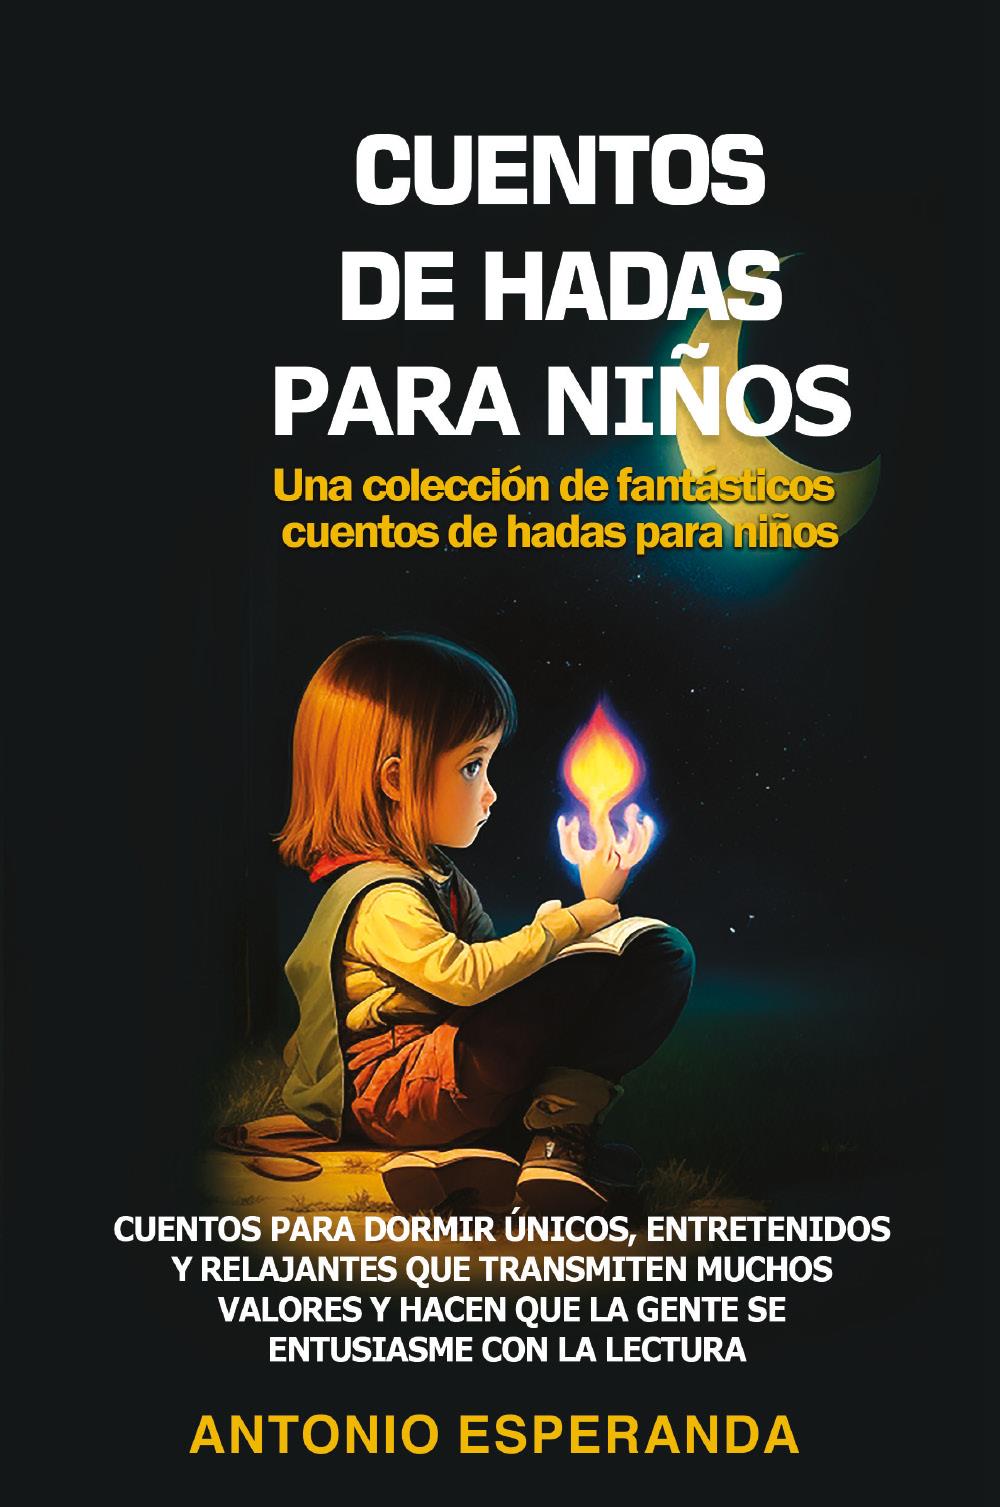 CUENTOS DE HADAS PARA NIÑOS Una colección de fantásticos cuentos de hadas para niños.